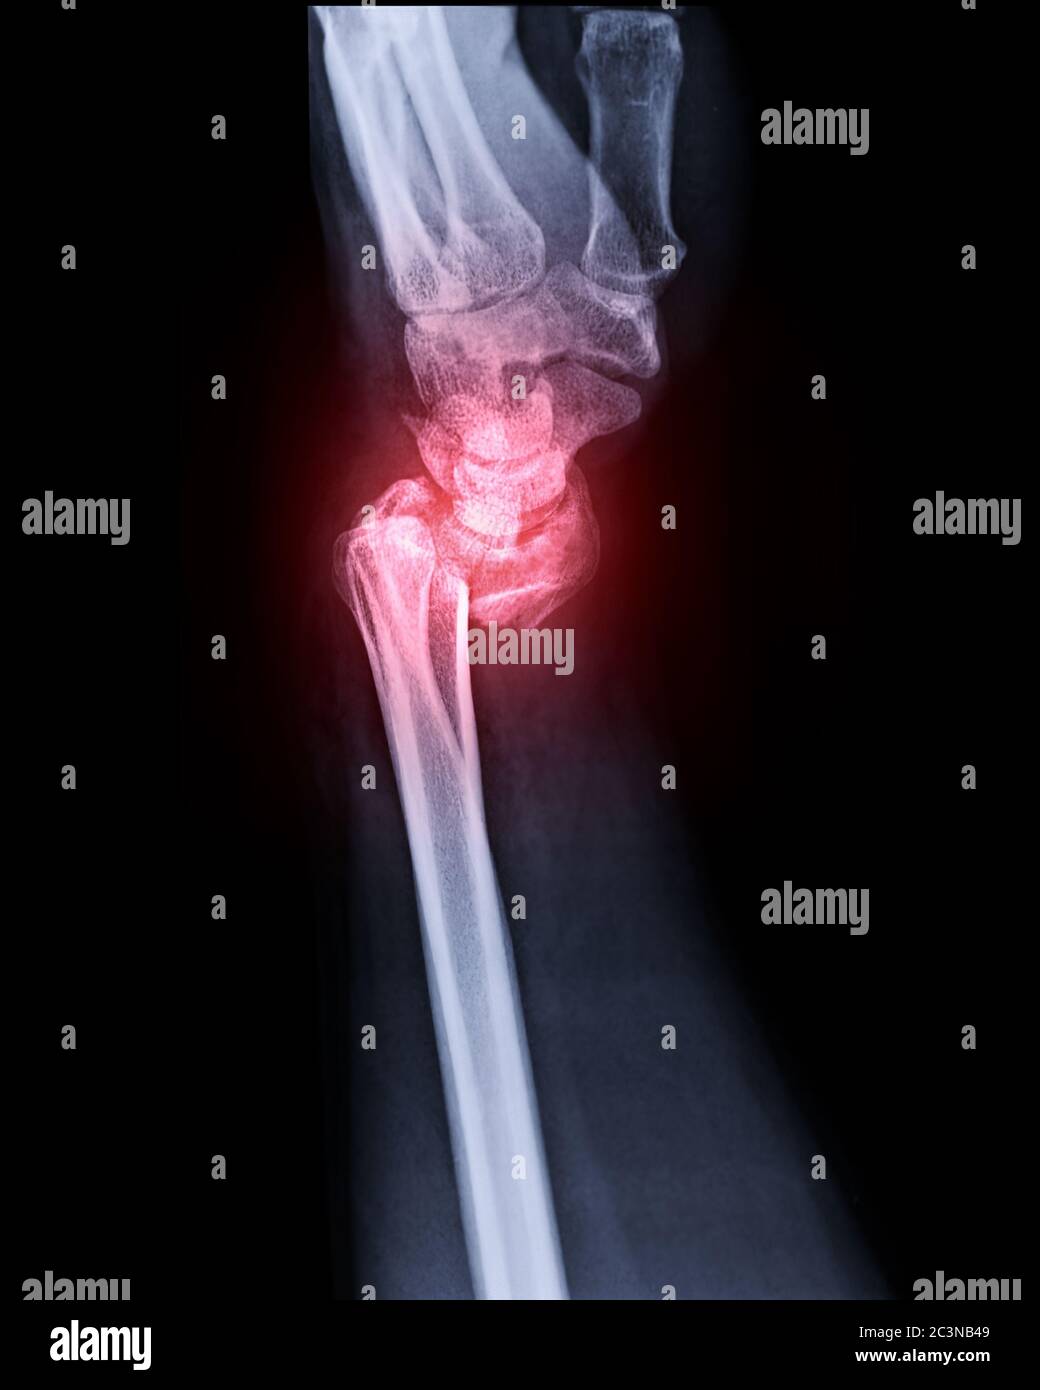 Immagine radiografica dell'articolazione del polso sinistra vista laterale per mostrare la frattura dell'osso radiale. Foto Stock